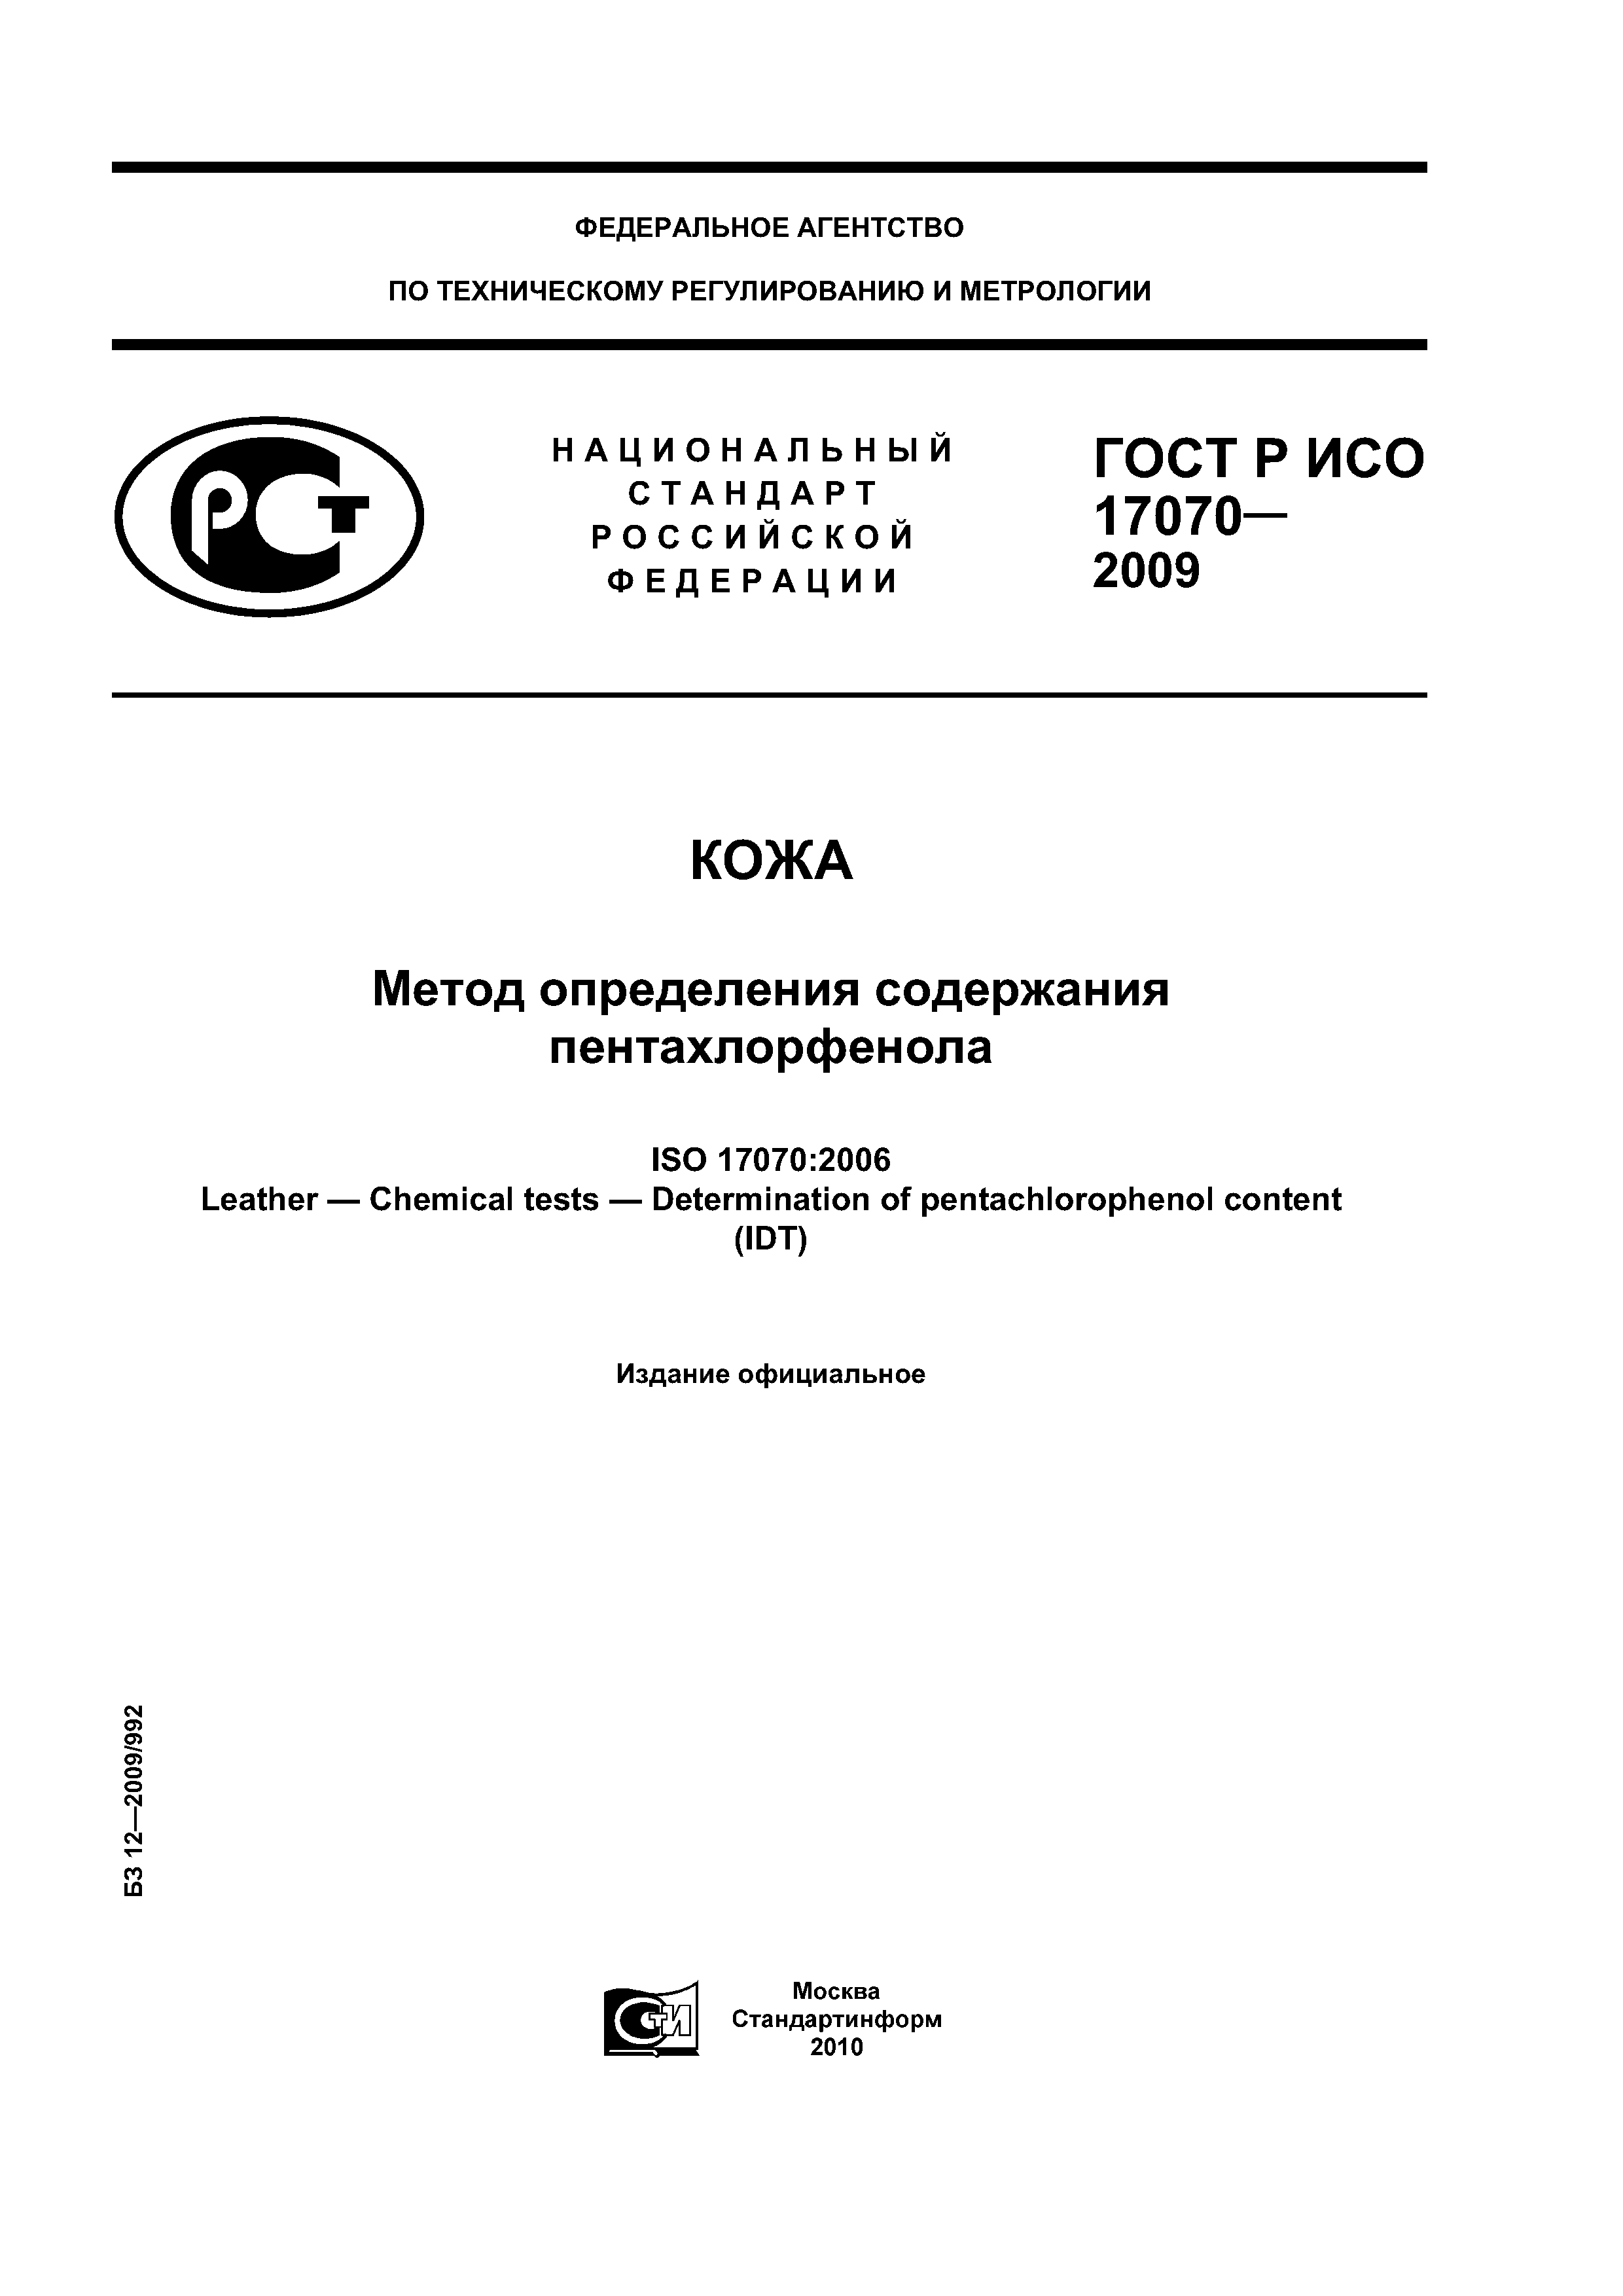 ГОСТ Р ИСО 17070-2009